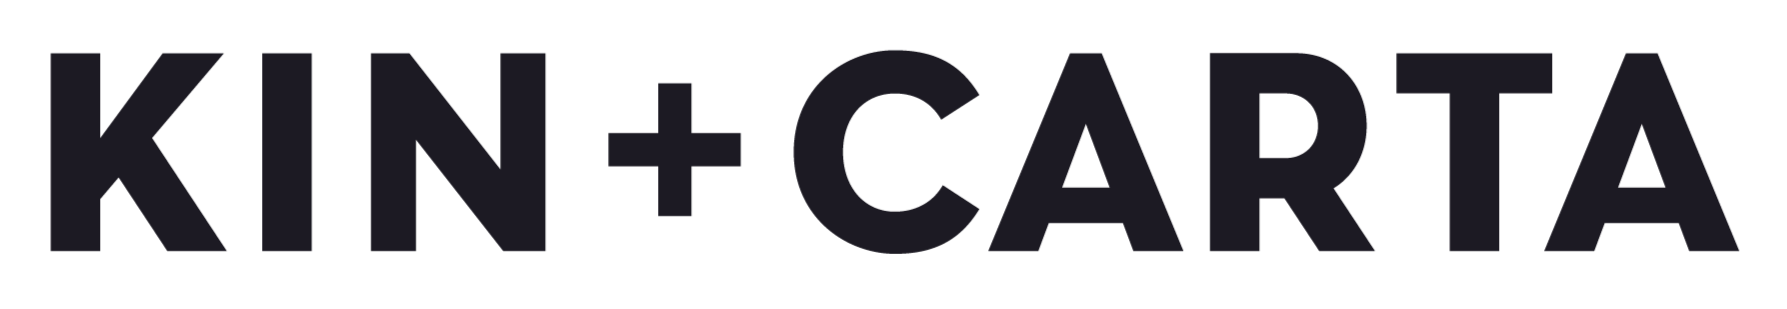 KIN+CARTA logo